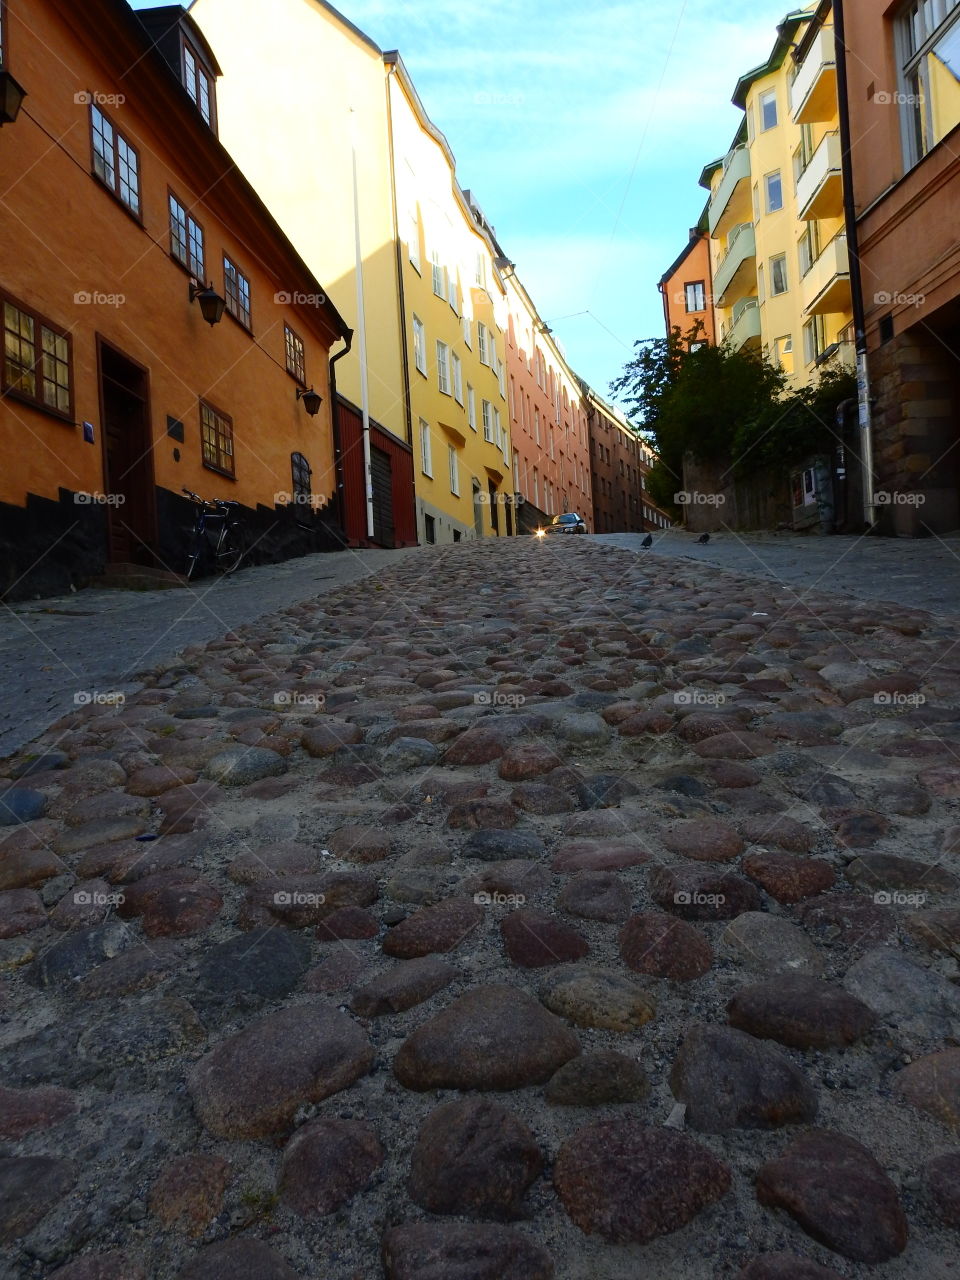 Cobblestone street in Stockholm